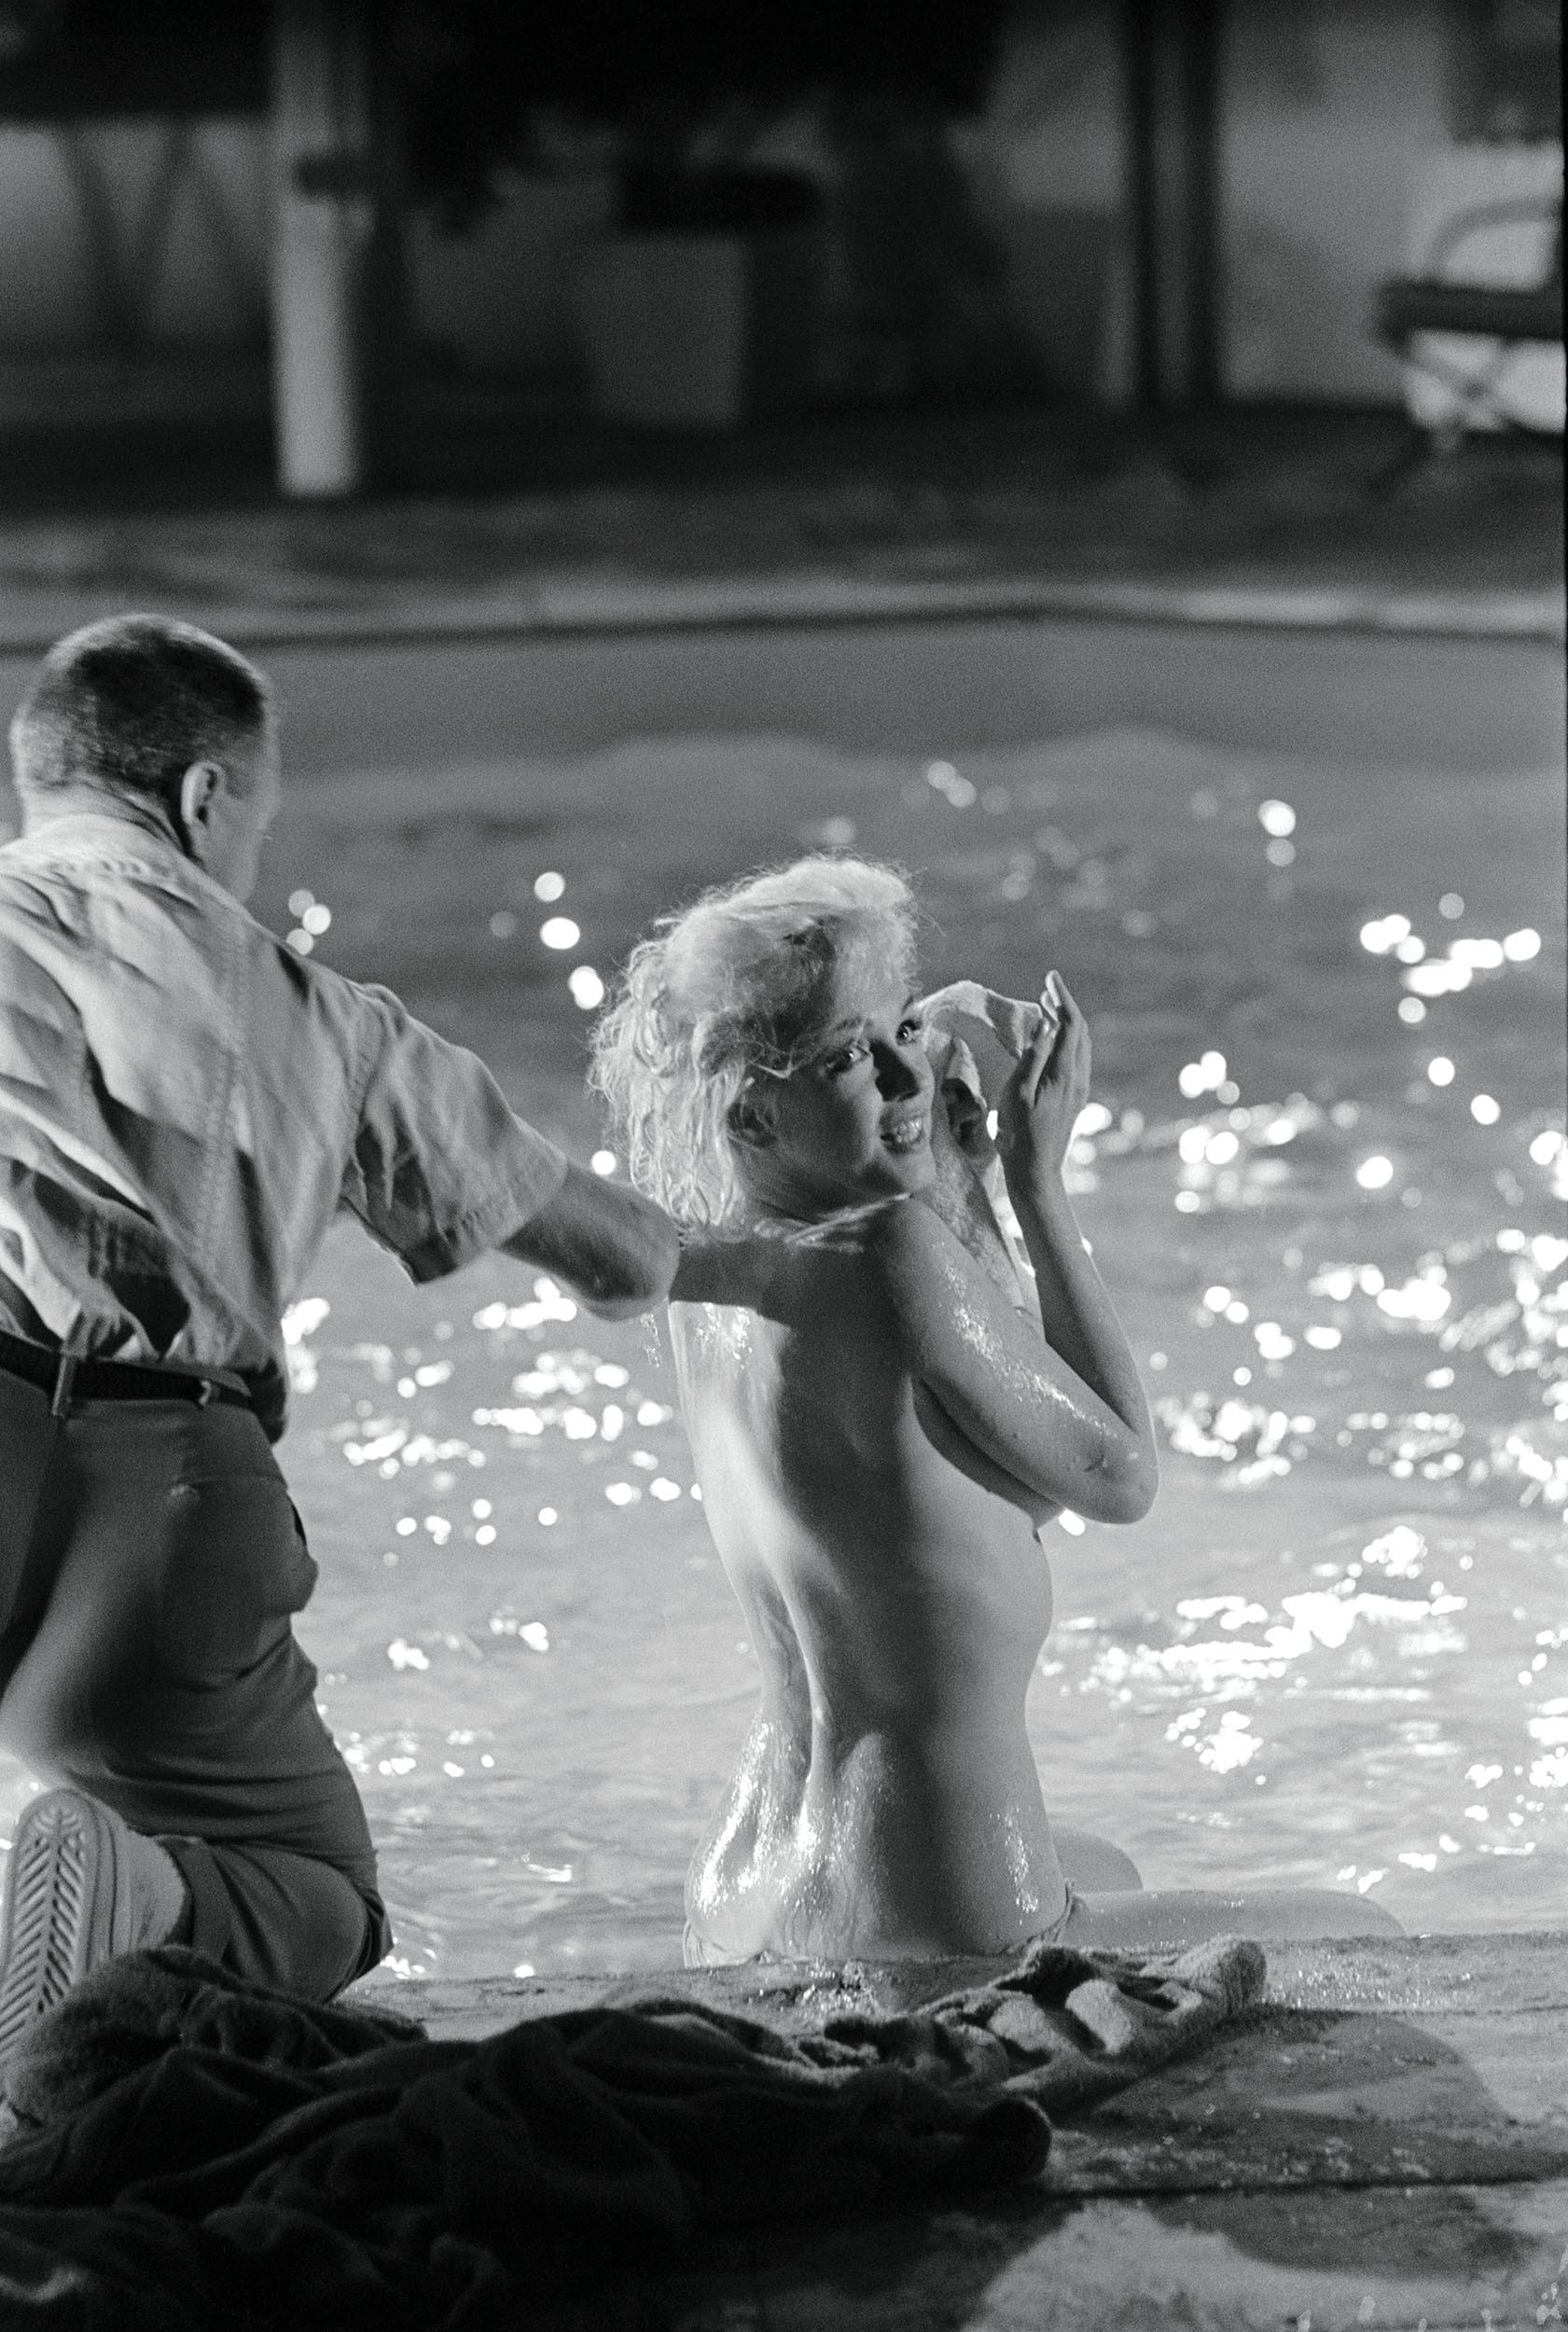 Marilyn Monroes Status als dauerhafte Glamourfigur machte sie zu einer der berühmtesten Persönlichkeiten der amerikanischen Geschichte. Von allen Bildern, die von dem unvergleichlichen Filmstar gemacht wurden, sind die Aufnahmen des berühmten